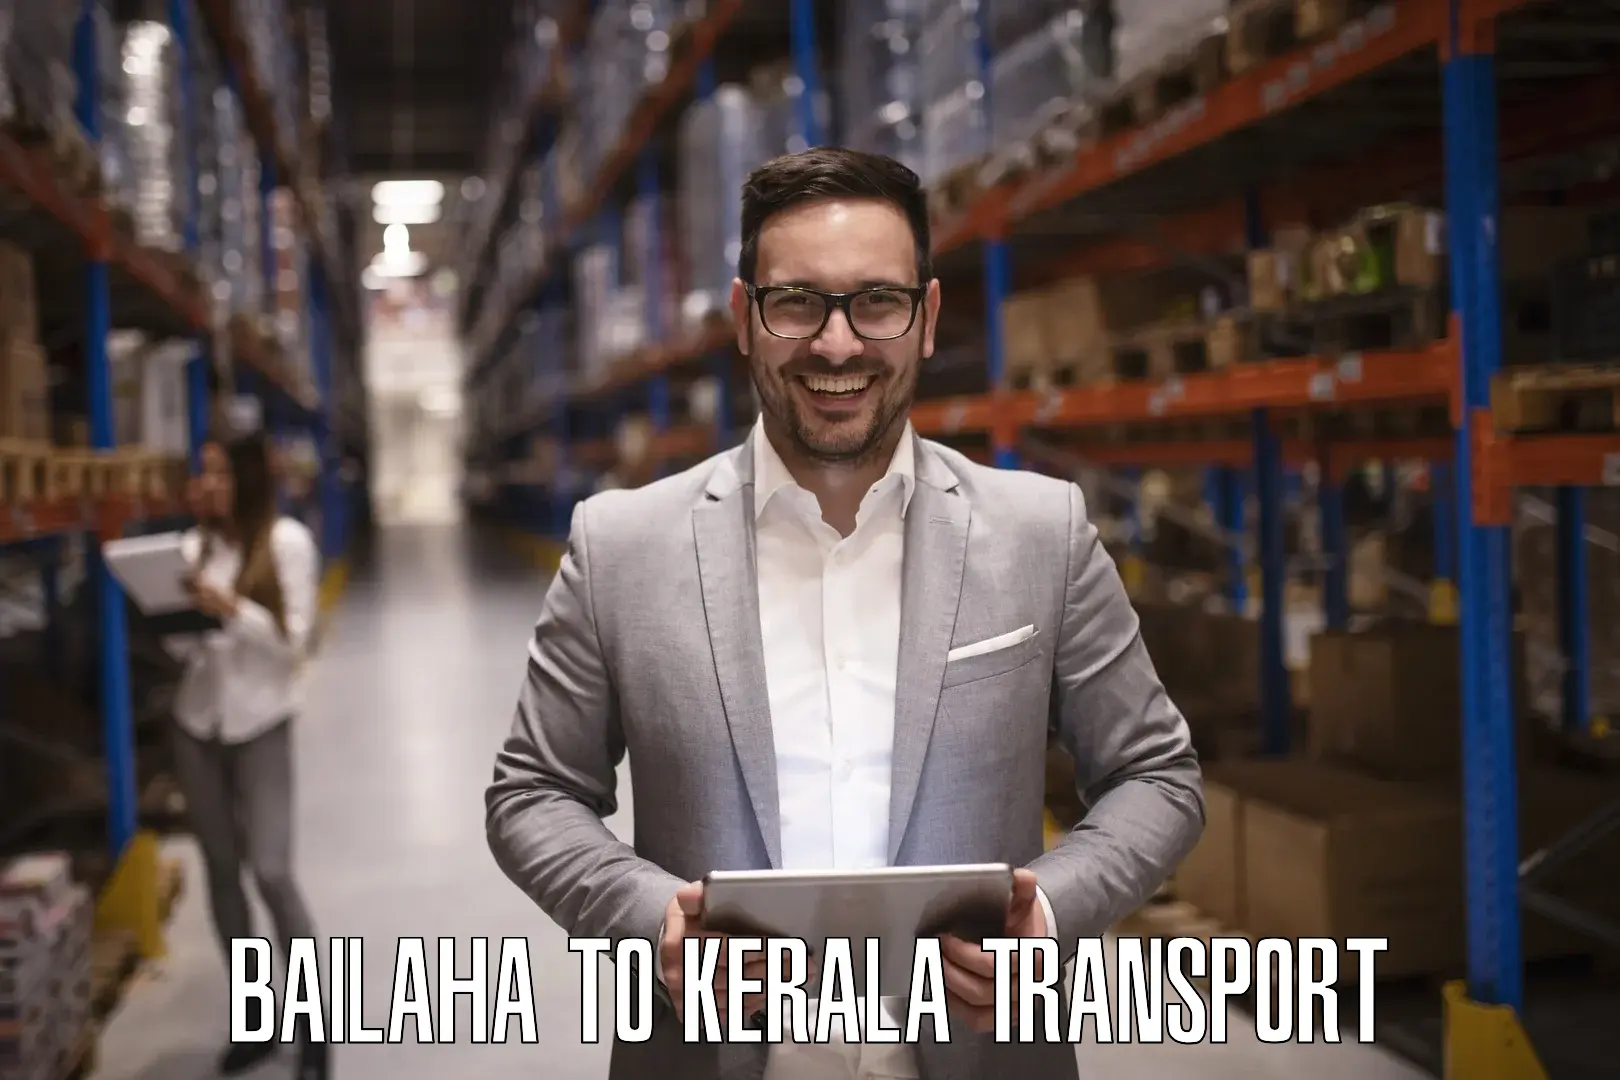 Transportation services Bailaha to Kerala